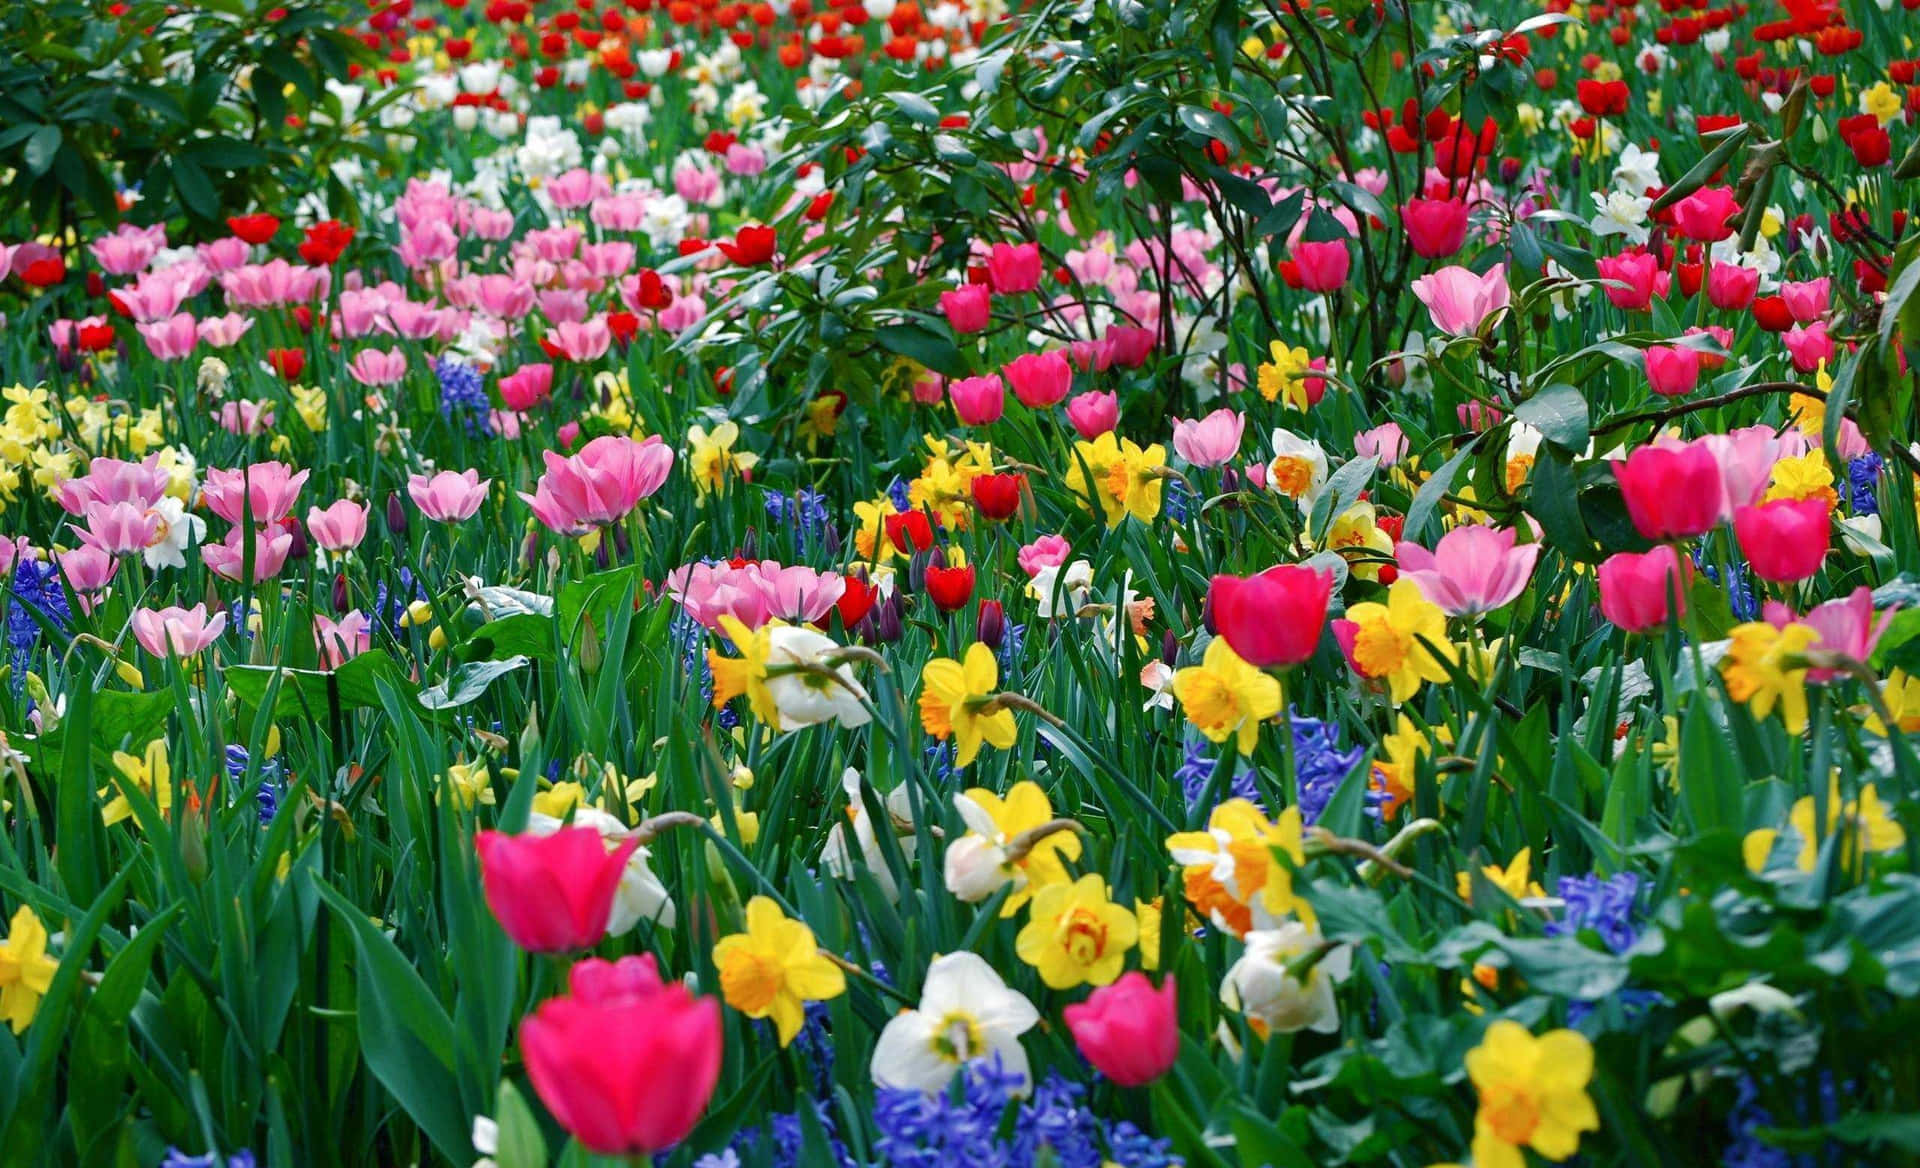 Farverigeblomster I Fuld Blomst Forårsbaggrund.